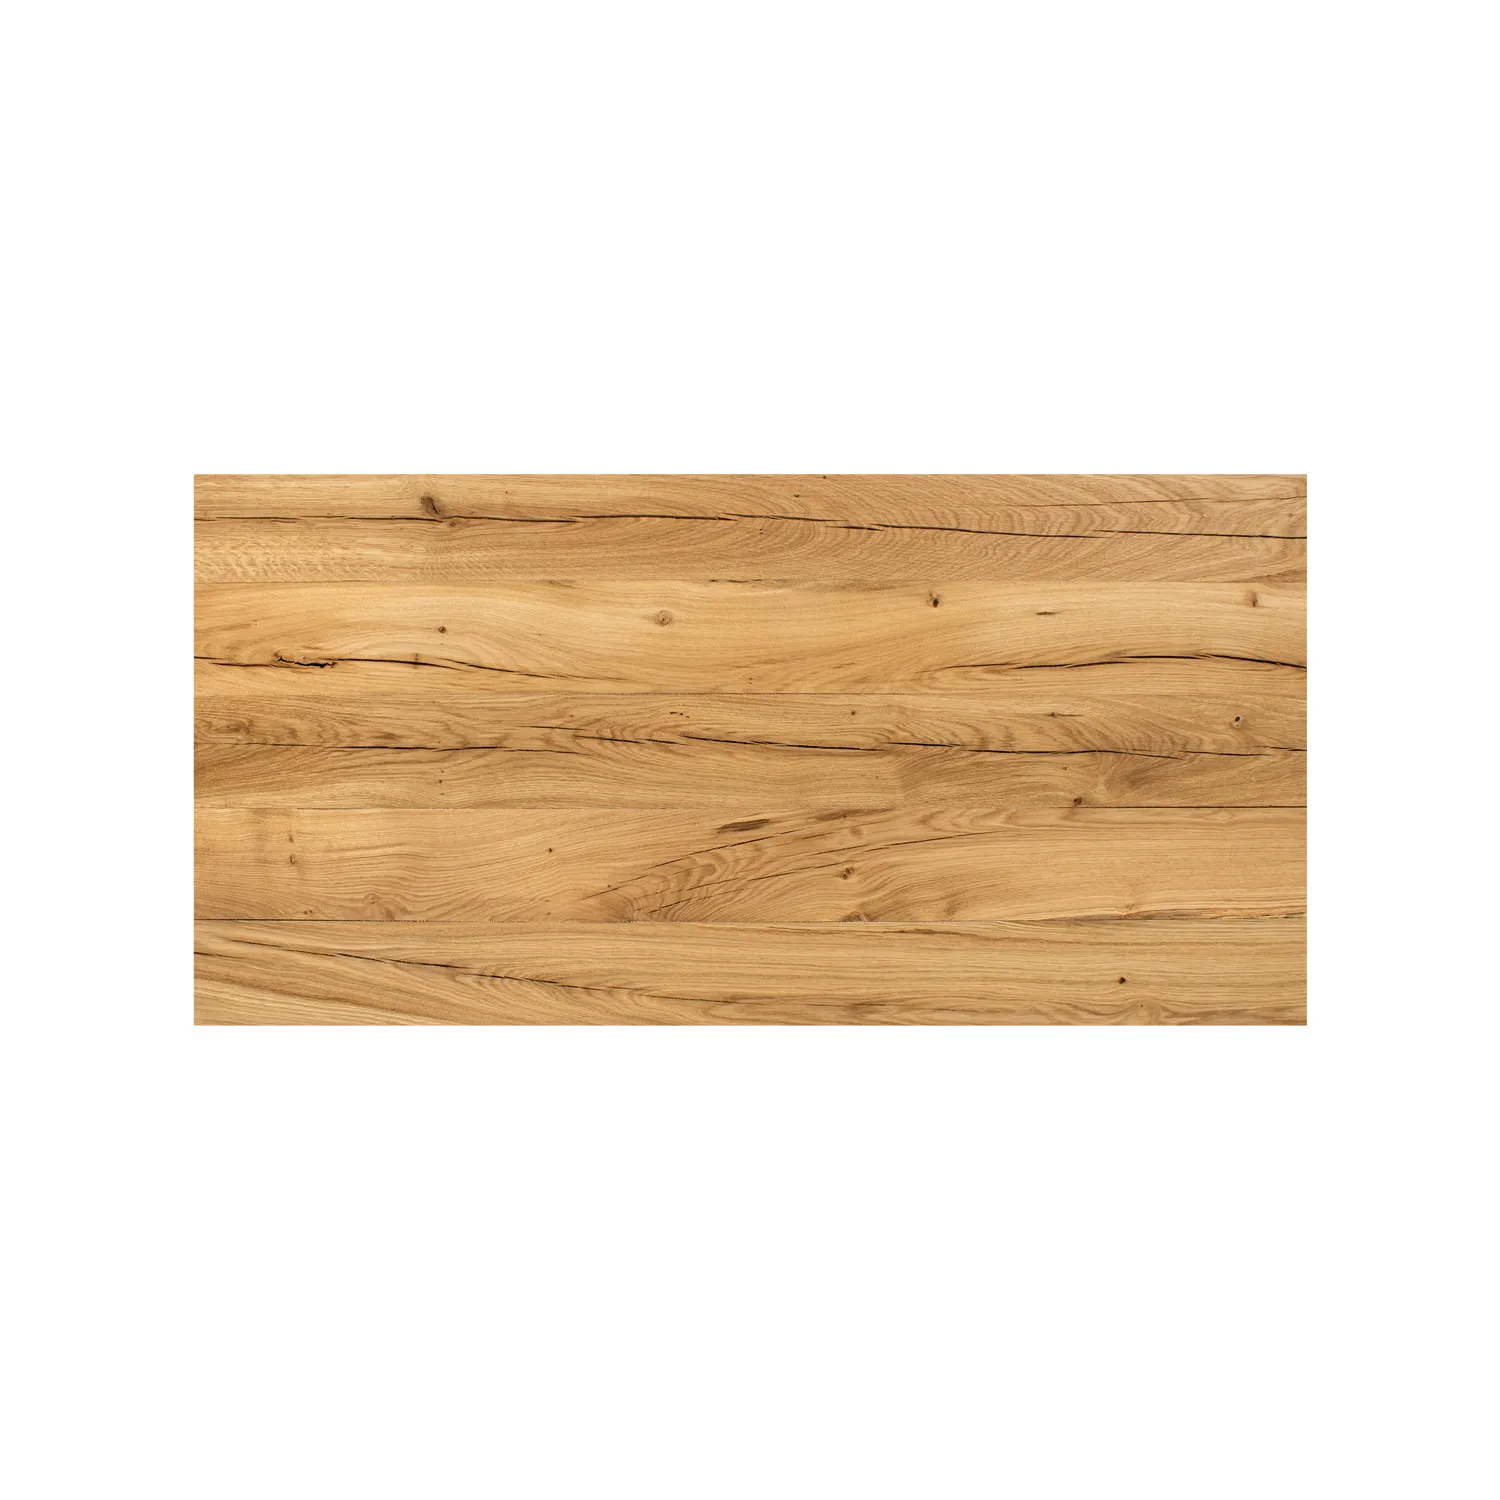 Tischoberfläche mit auffälliger Maserung im Holz